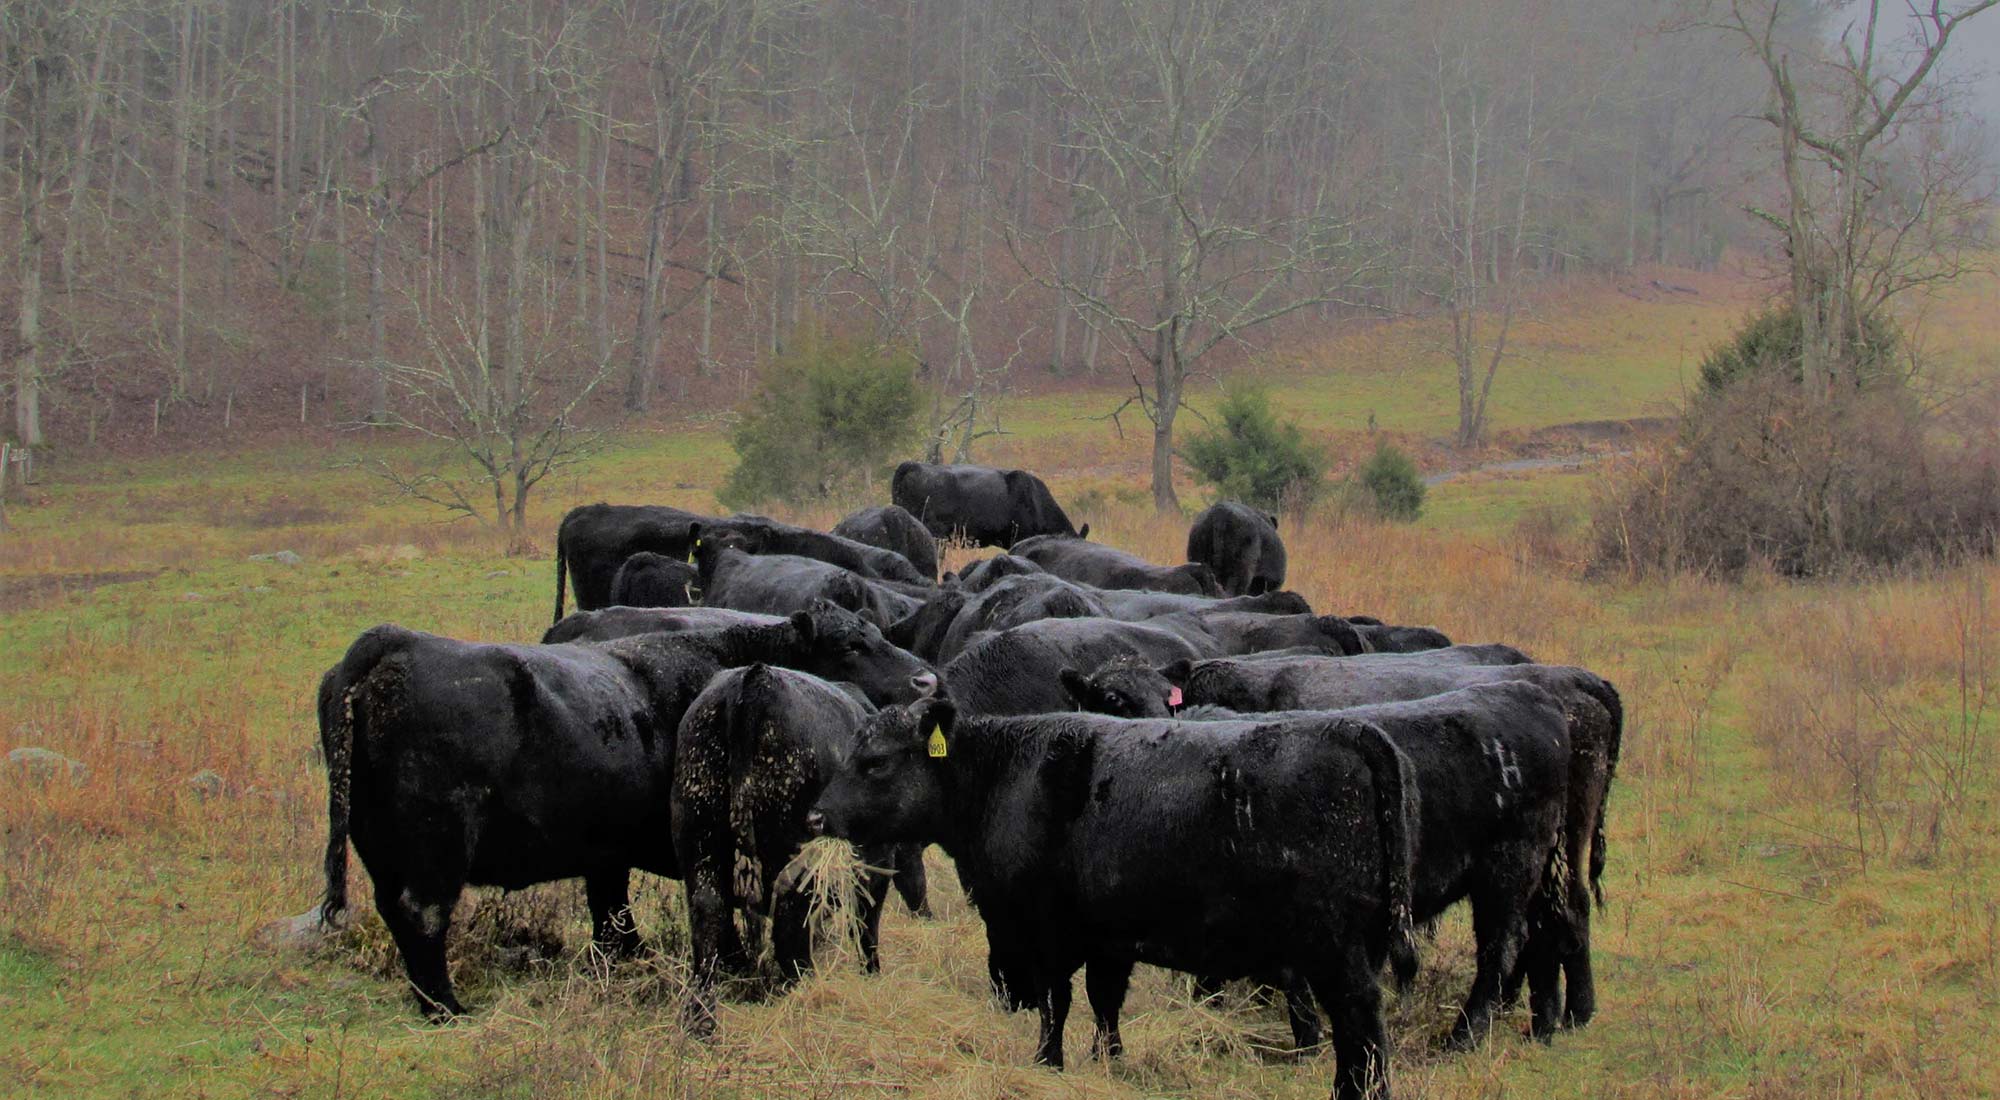 Cows feeding on grass